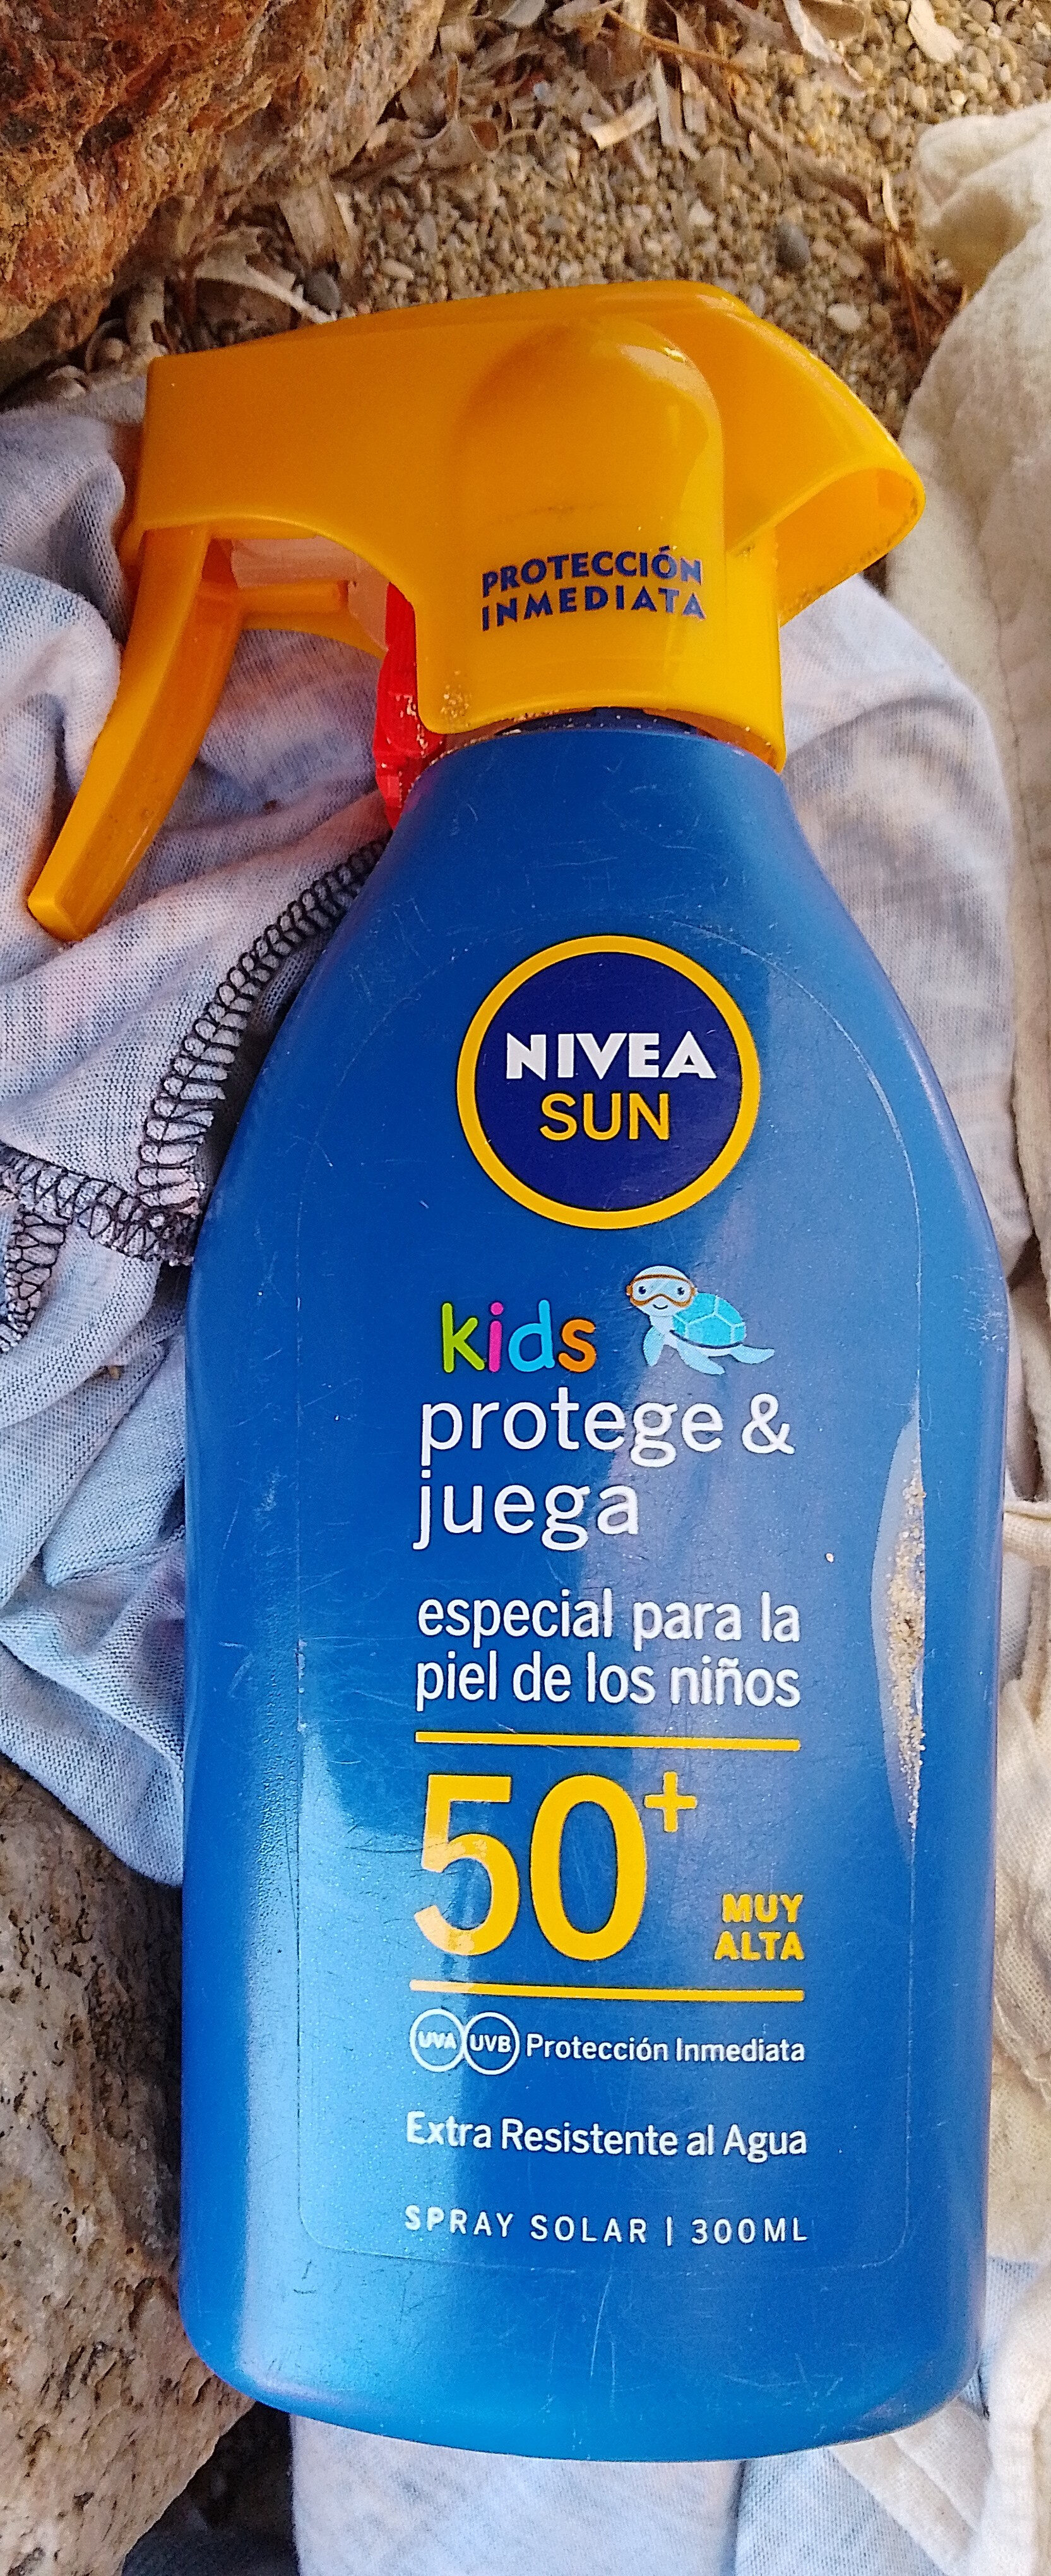 Nivea Sun kids 50+ - Продукт - es